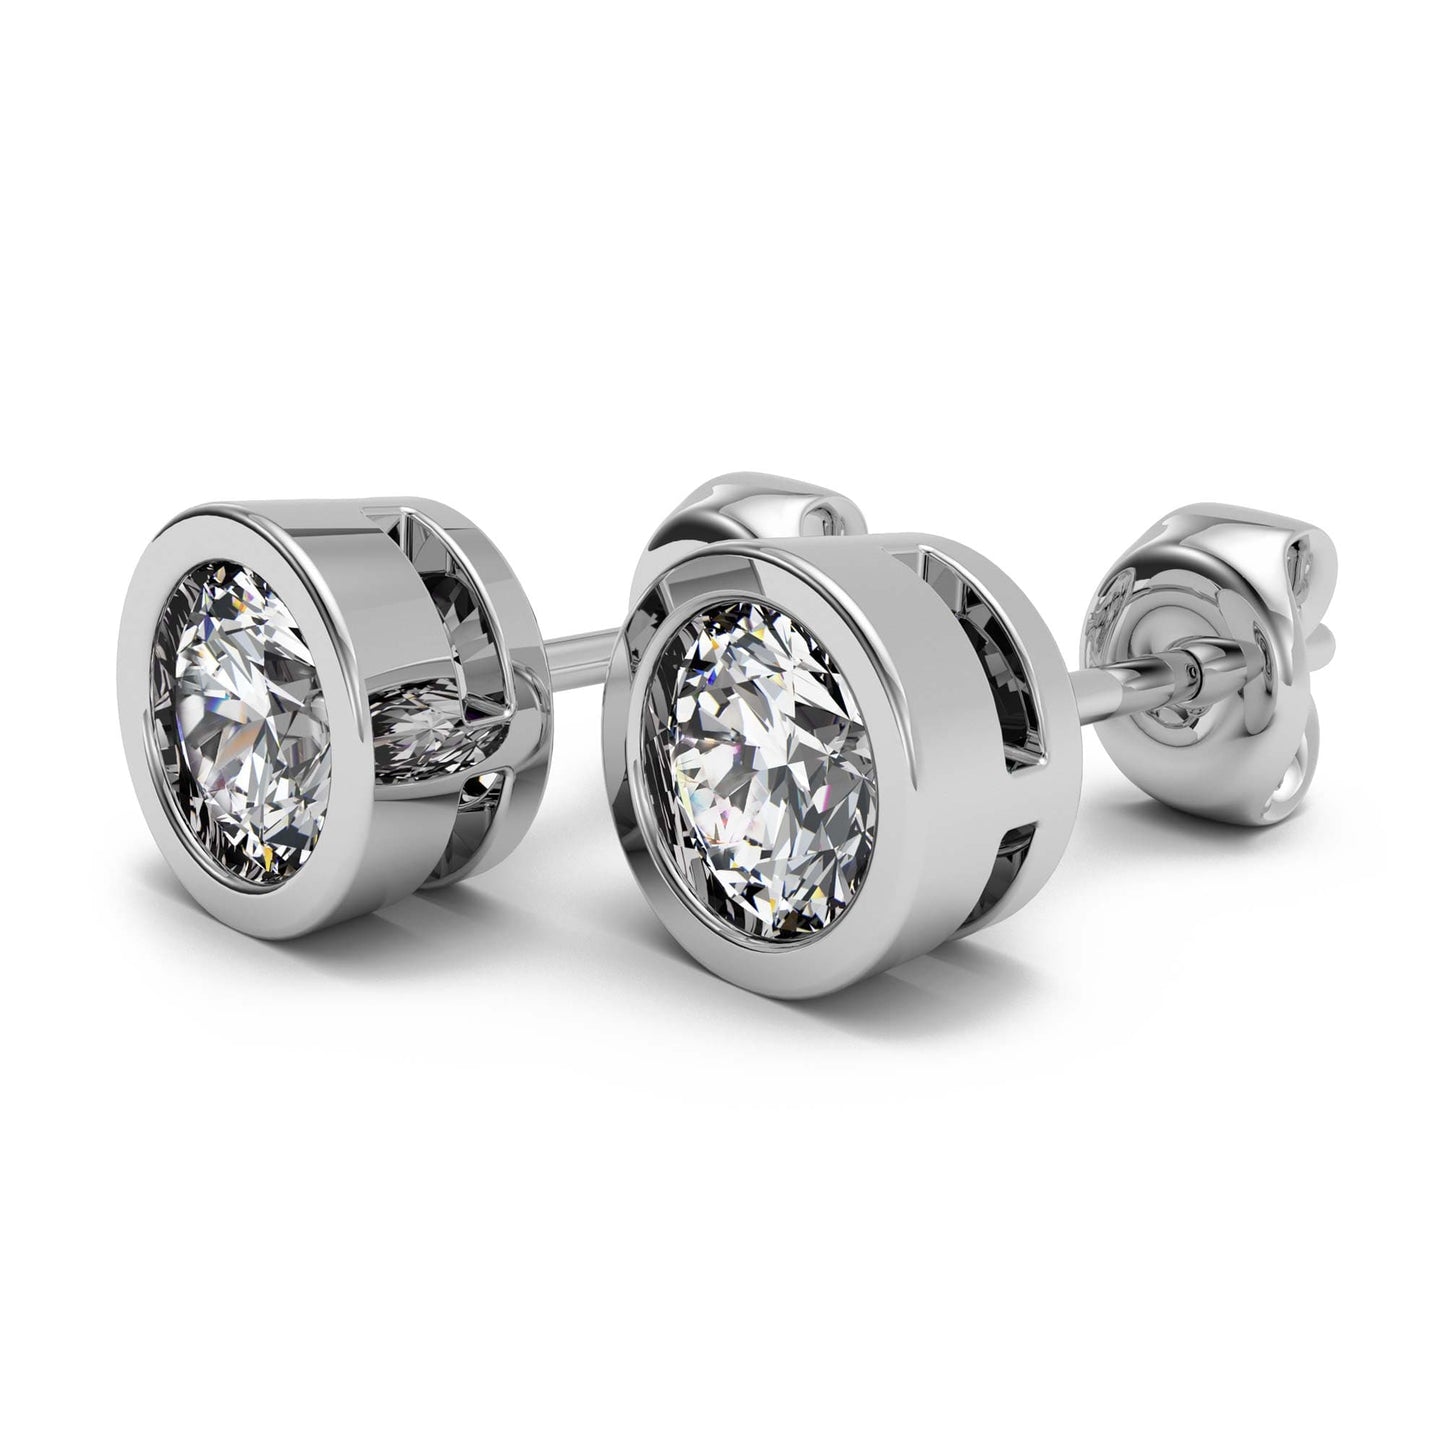 Bezel Round Cut Diamond Stud Earrings 14k Gold